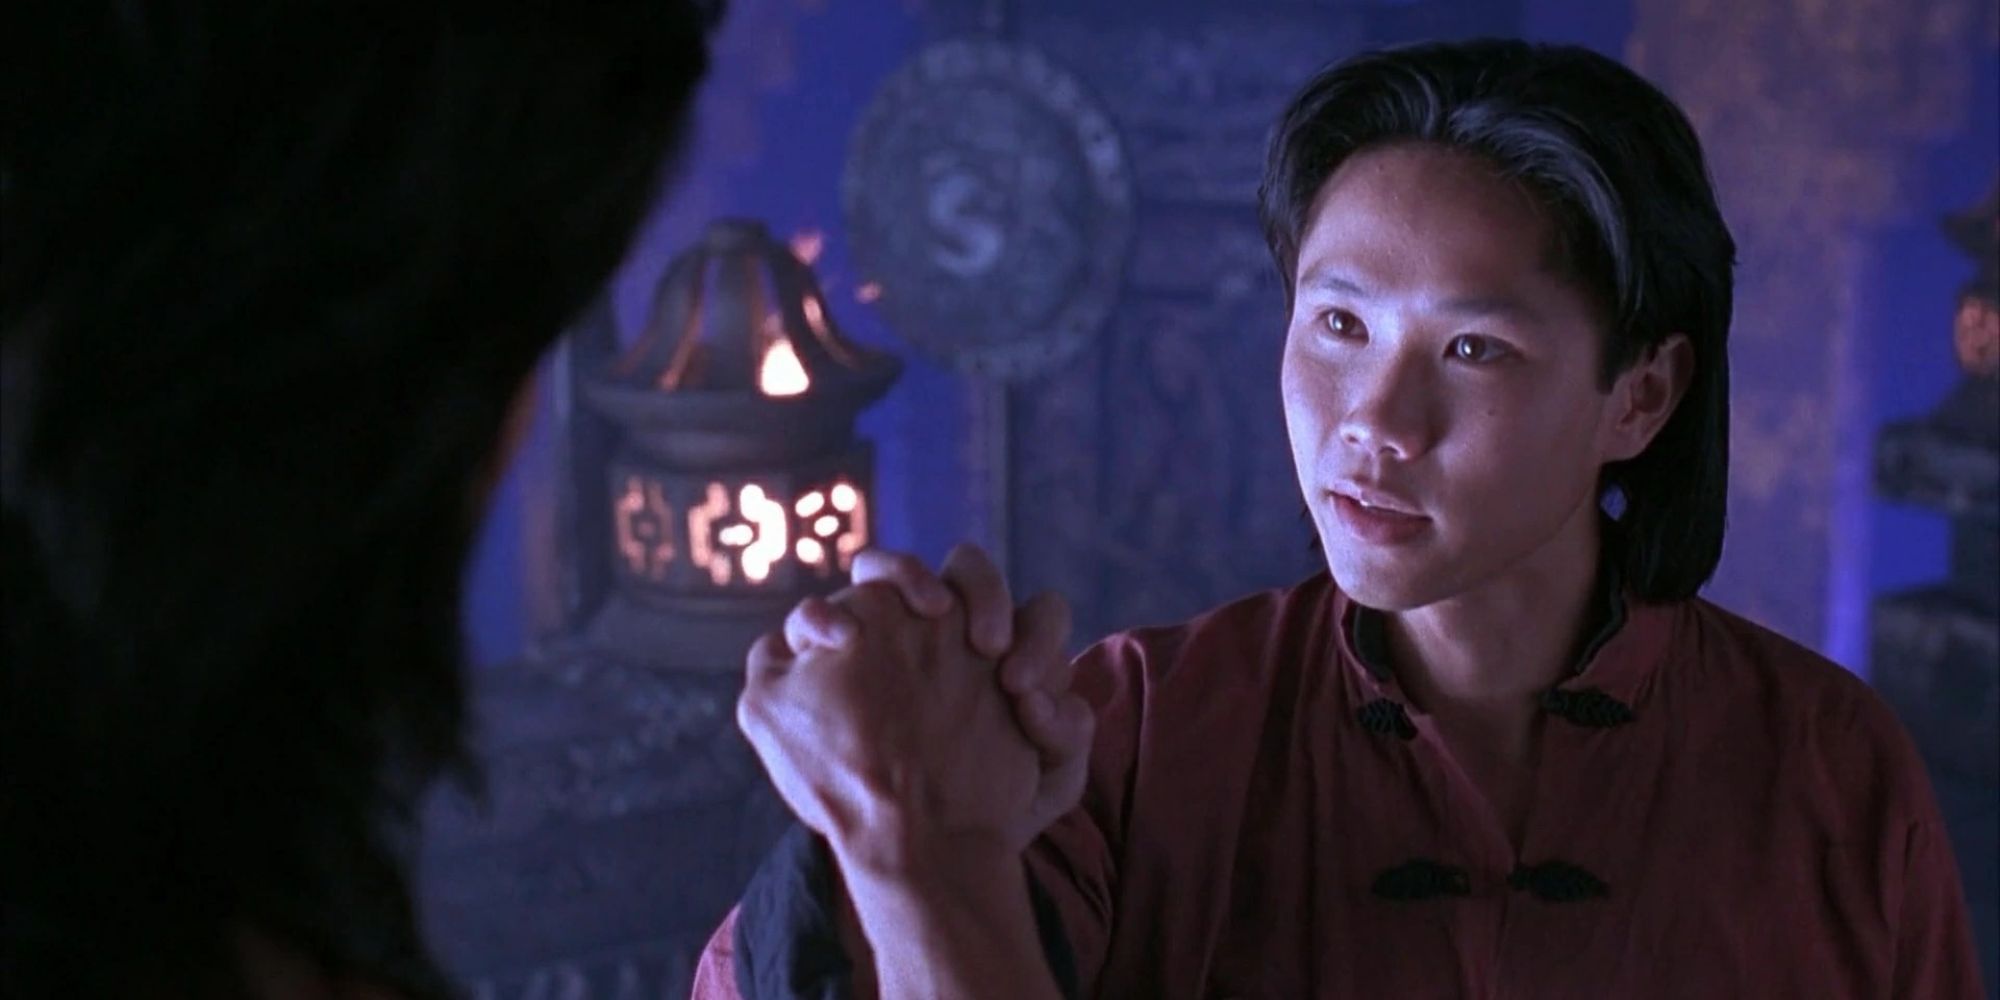 Liu Kang and Chow Kang shake hands in a dark temple